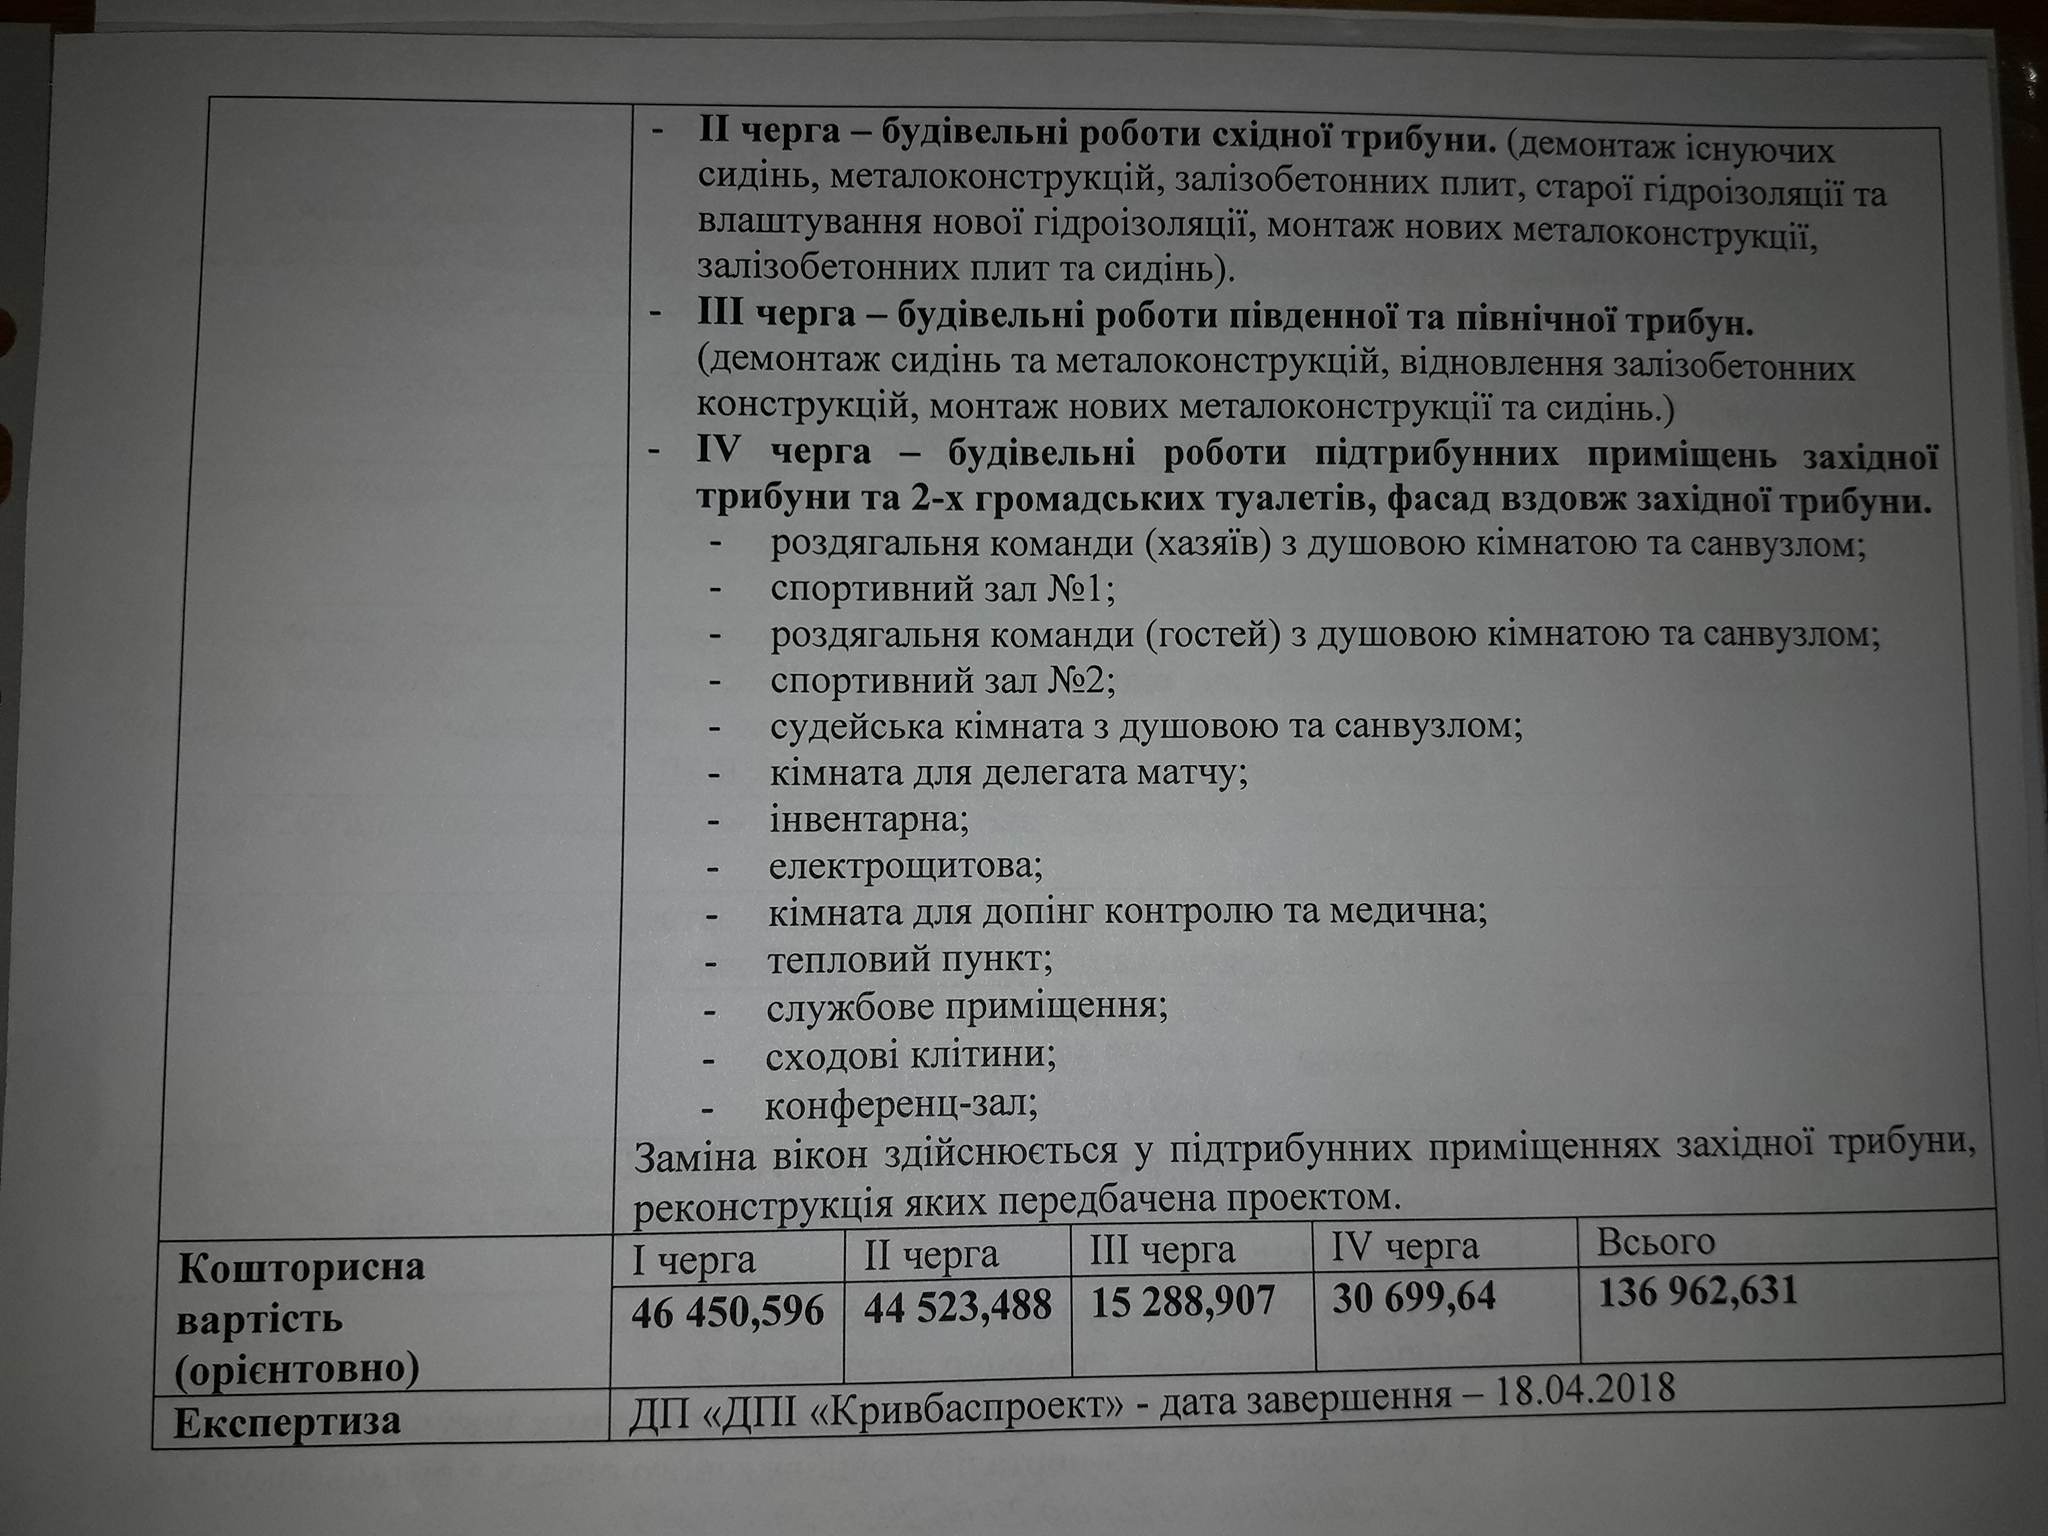 Смета ремонтных работ в проектной документации Криворожского исполкома 